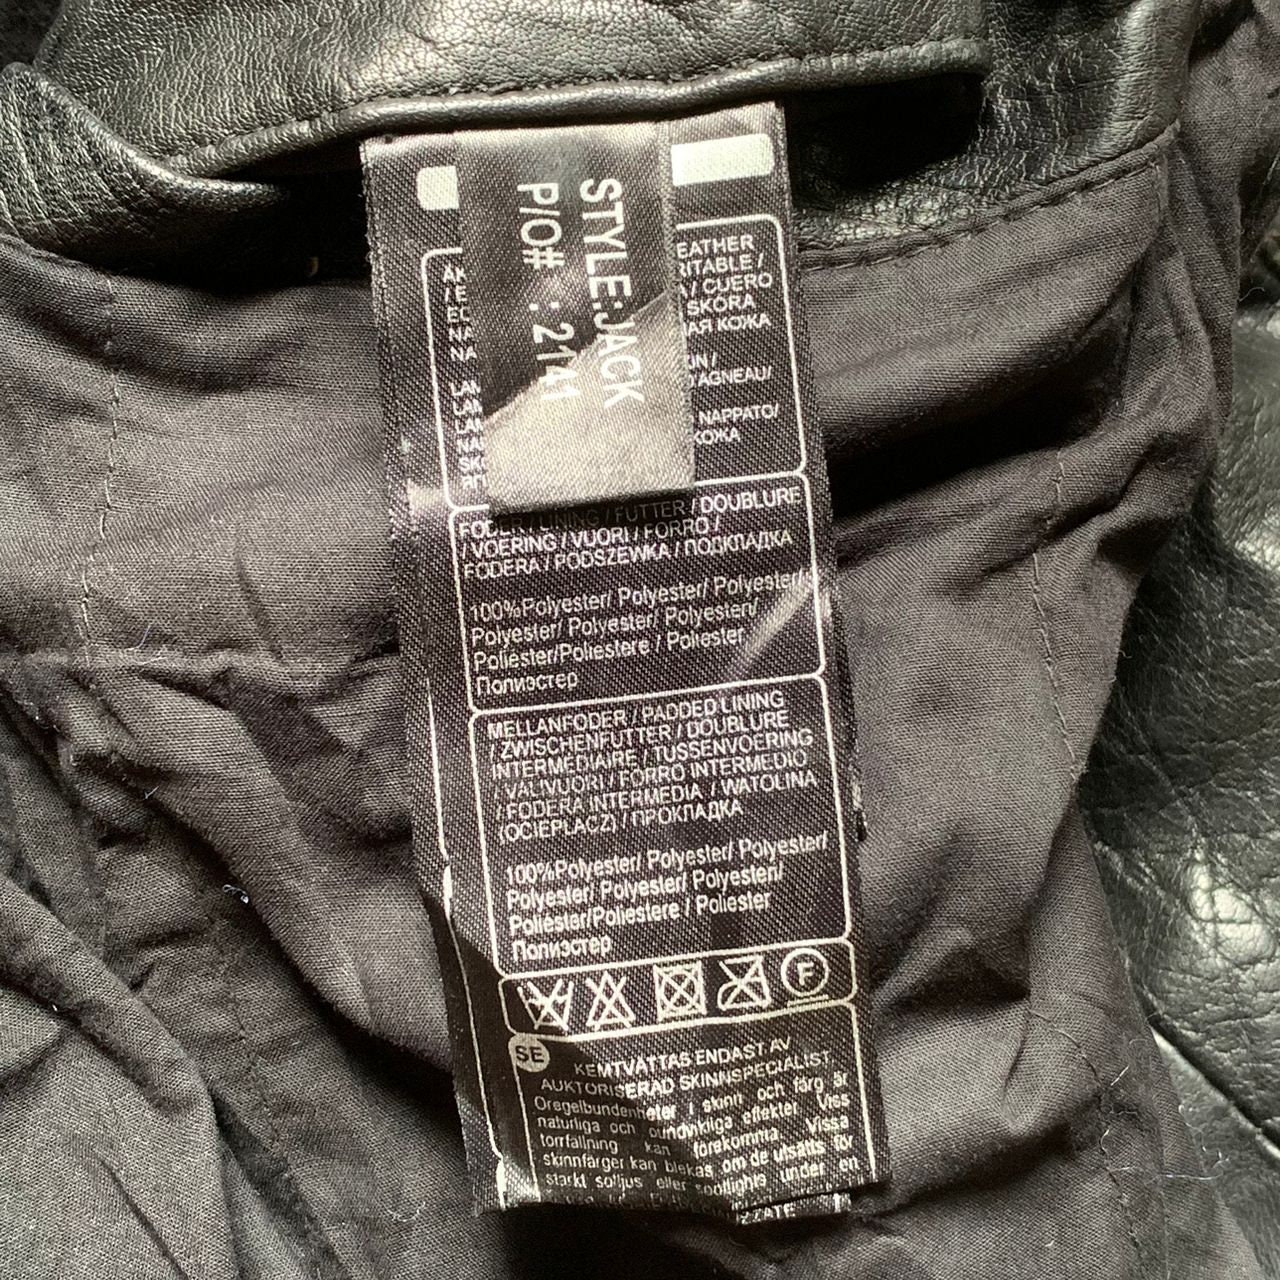 Vintage SAKI Sweden Leather Jacket Black Color - Etsy